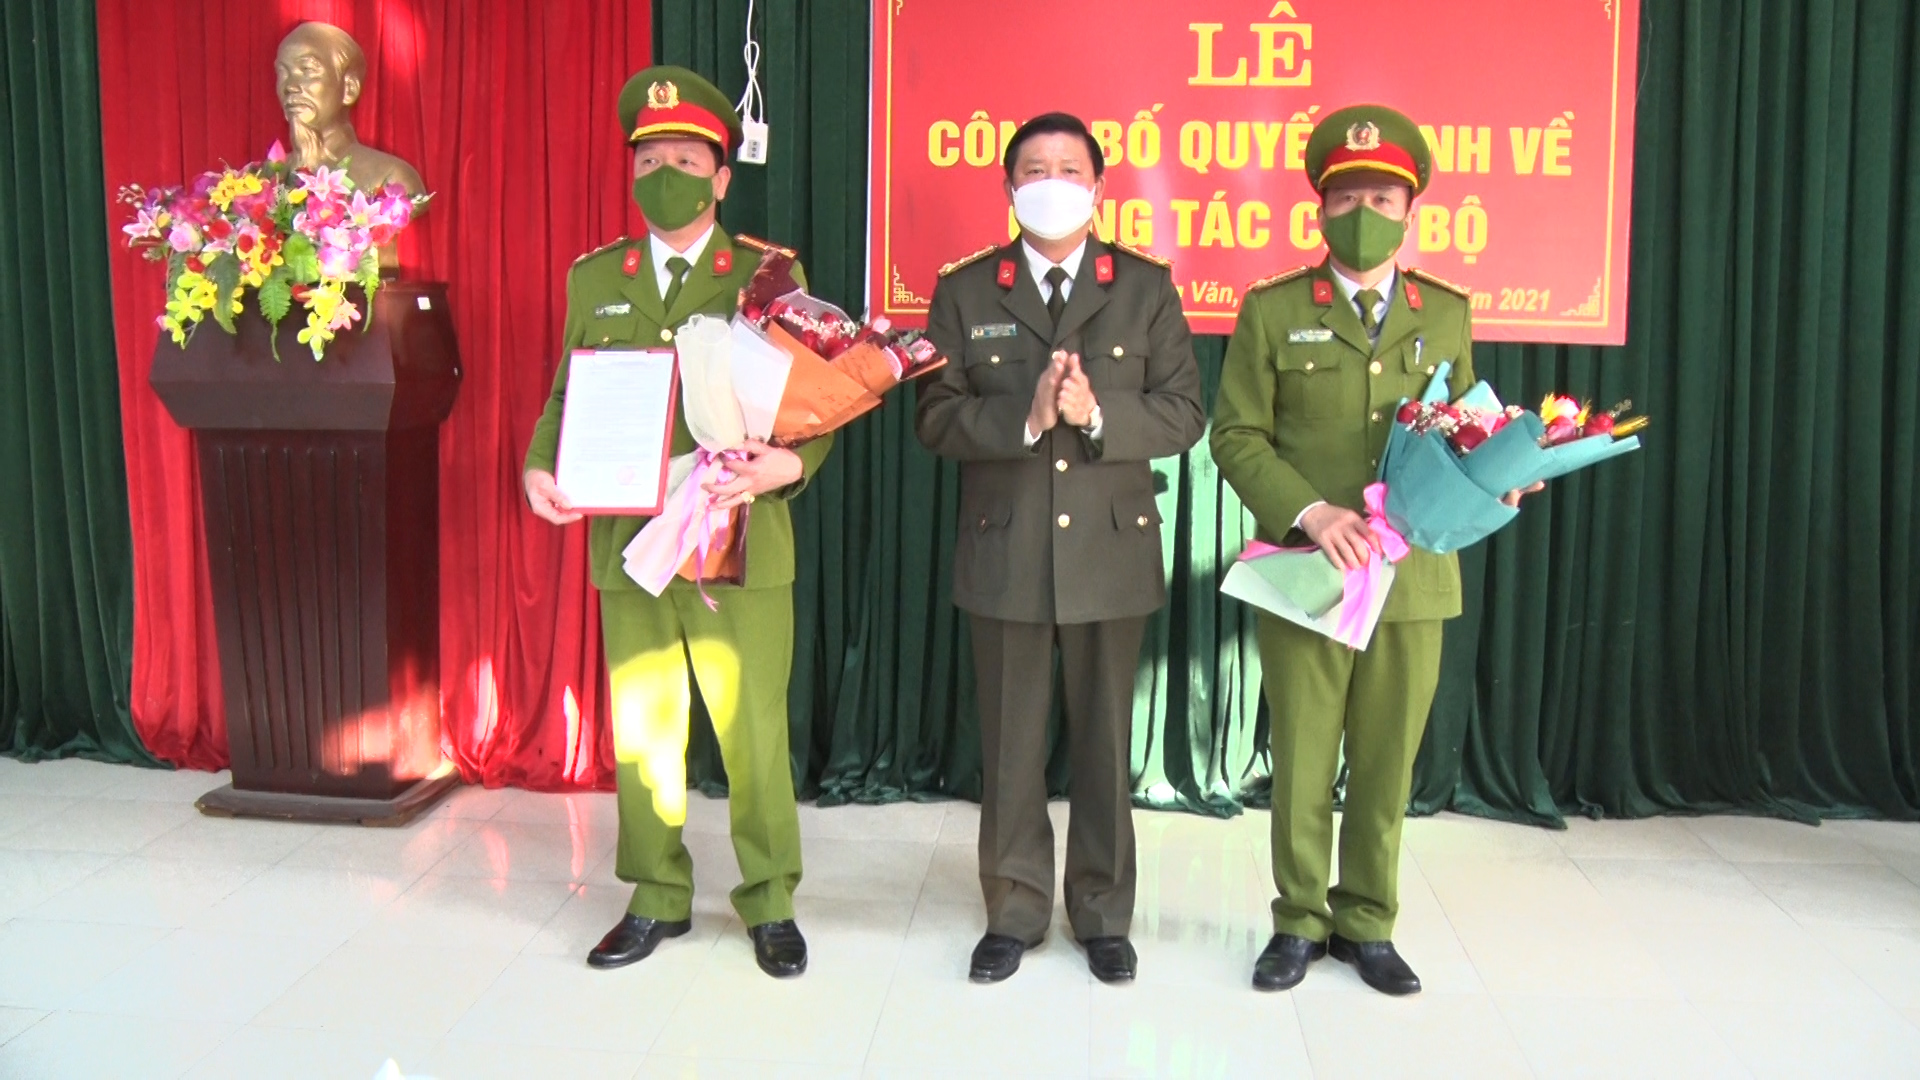 Lễ công bố quyết định của Giám đốc Công an tỉnh Hà Giang về tổ chức cán bộ